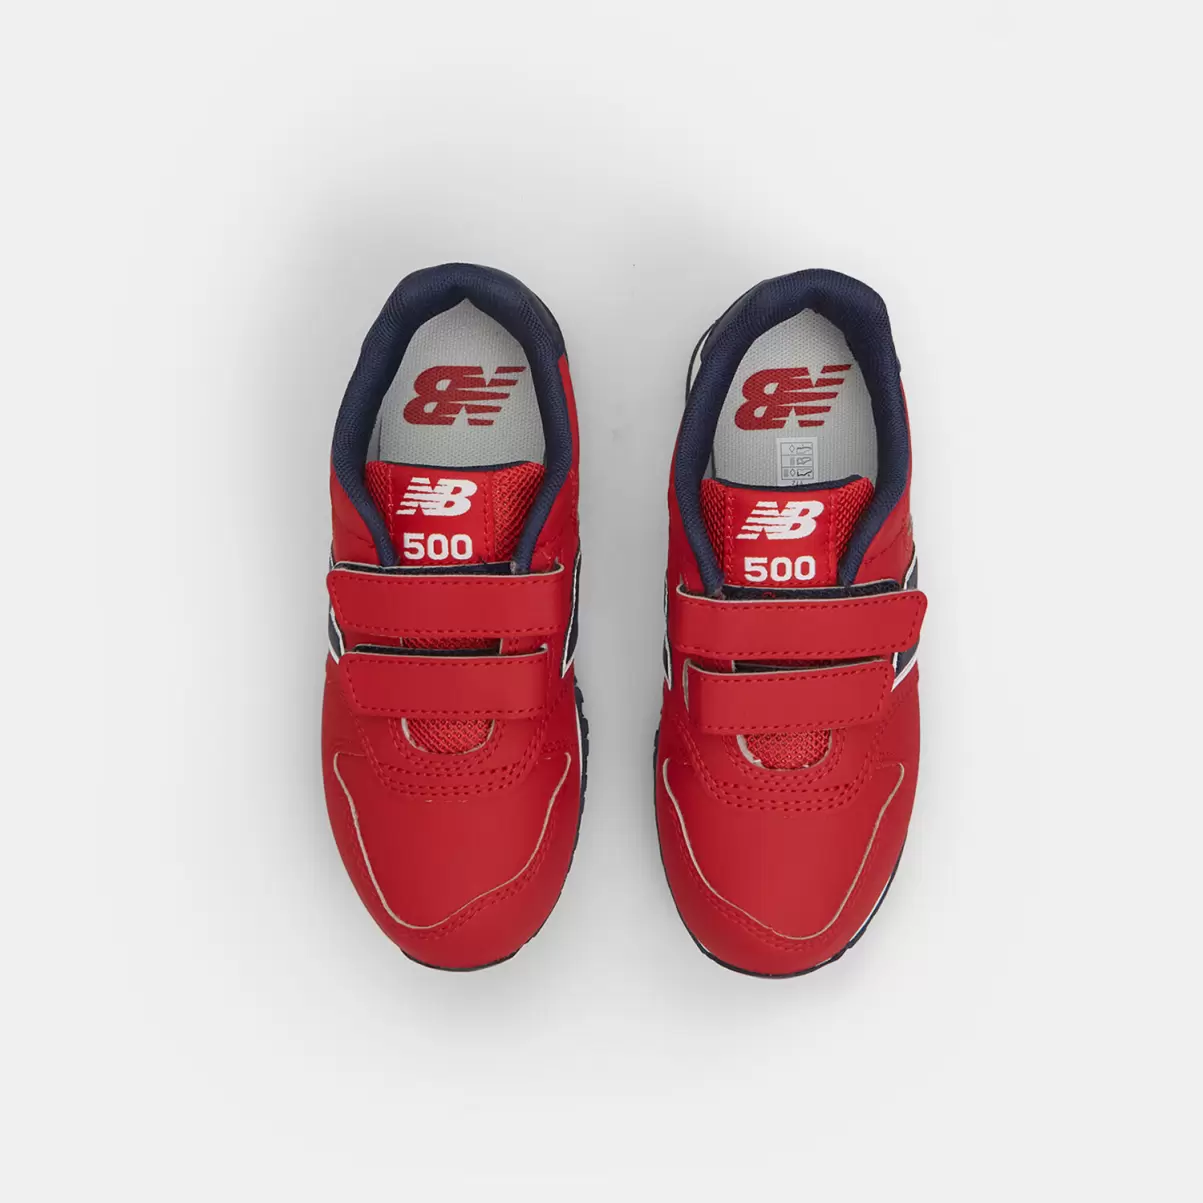 Bata Consumatore Scarpe Sportive Bambini Sneakers Da Bambina New Balance Con Strappi Rossa - 3